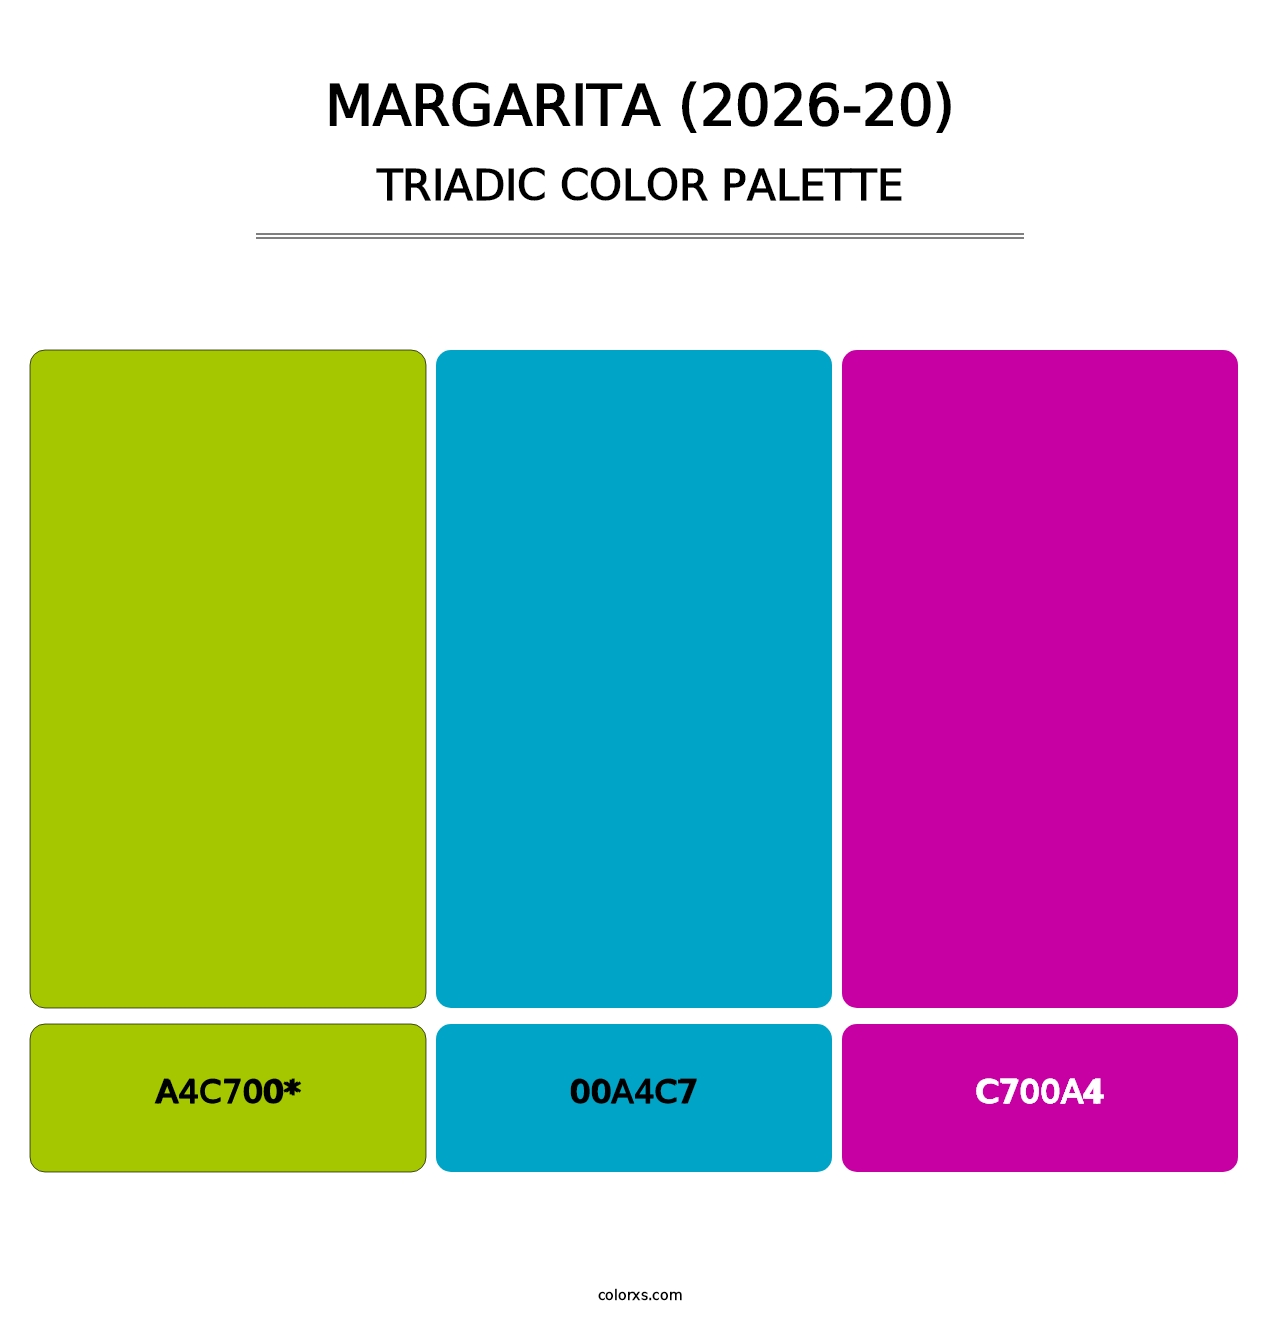 Margarita (2026-20) - Triadic Color Palette